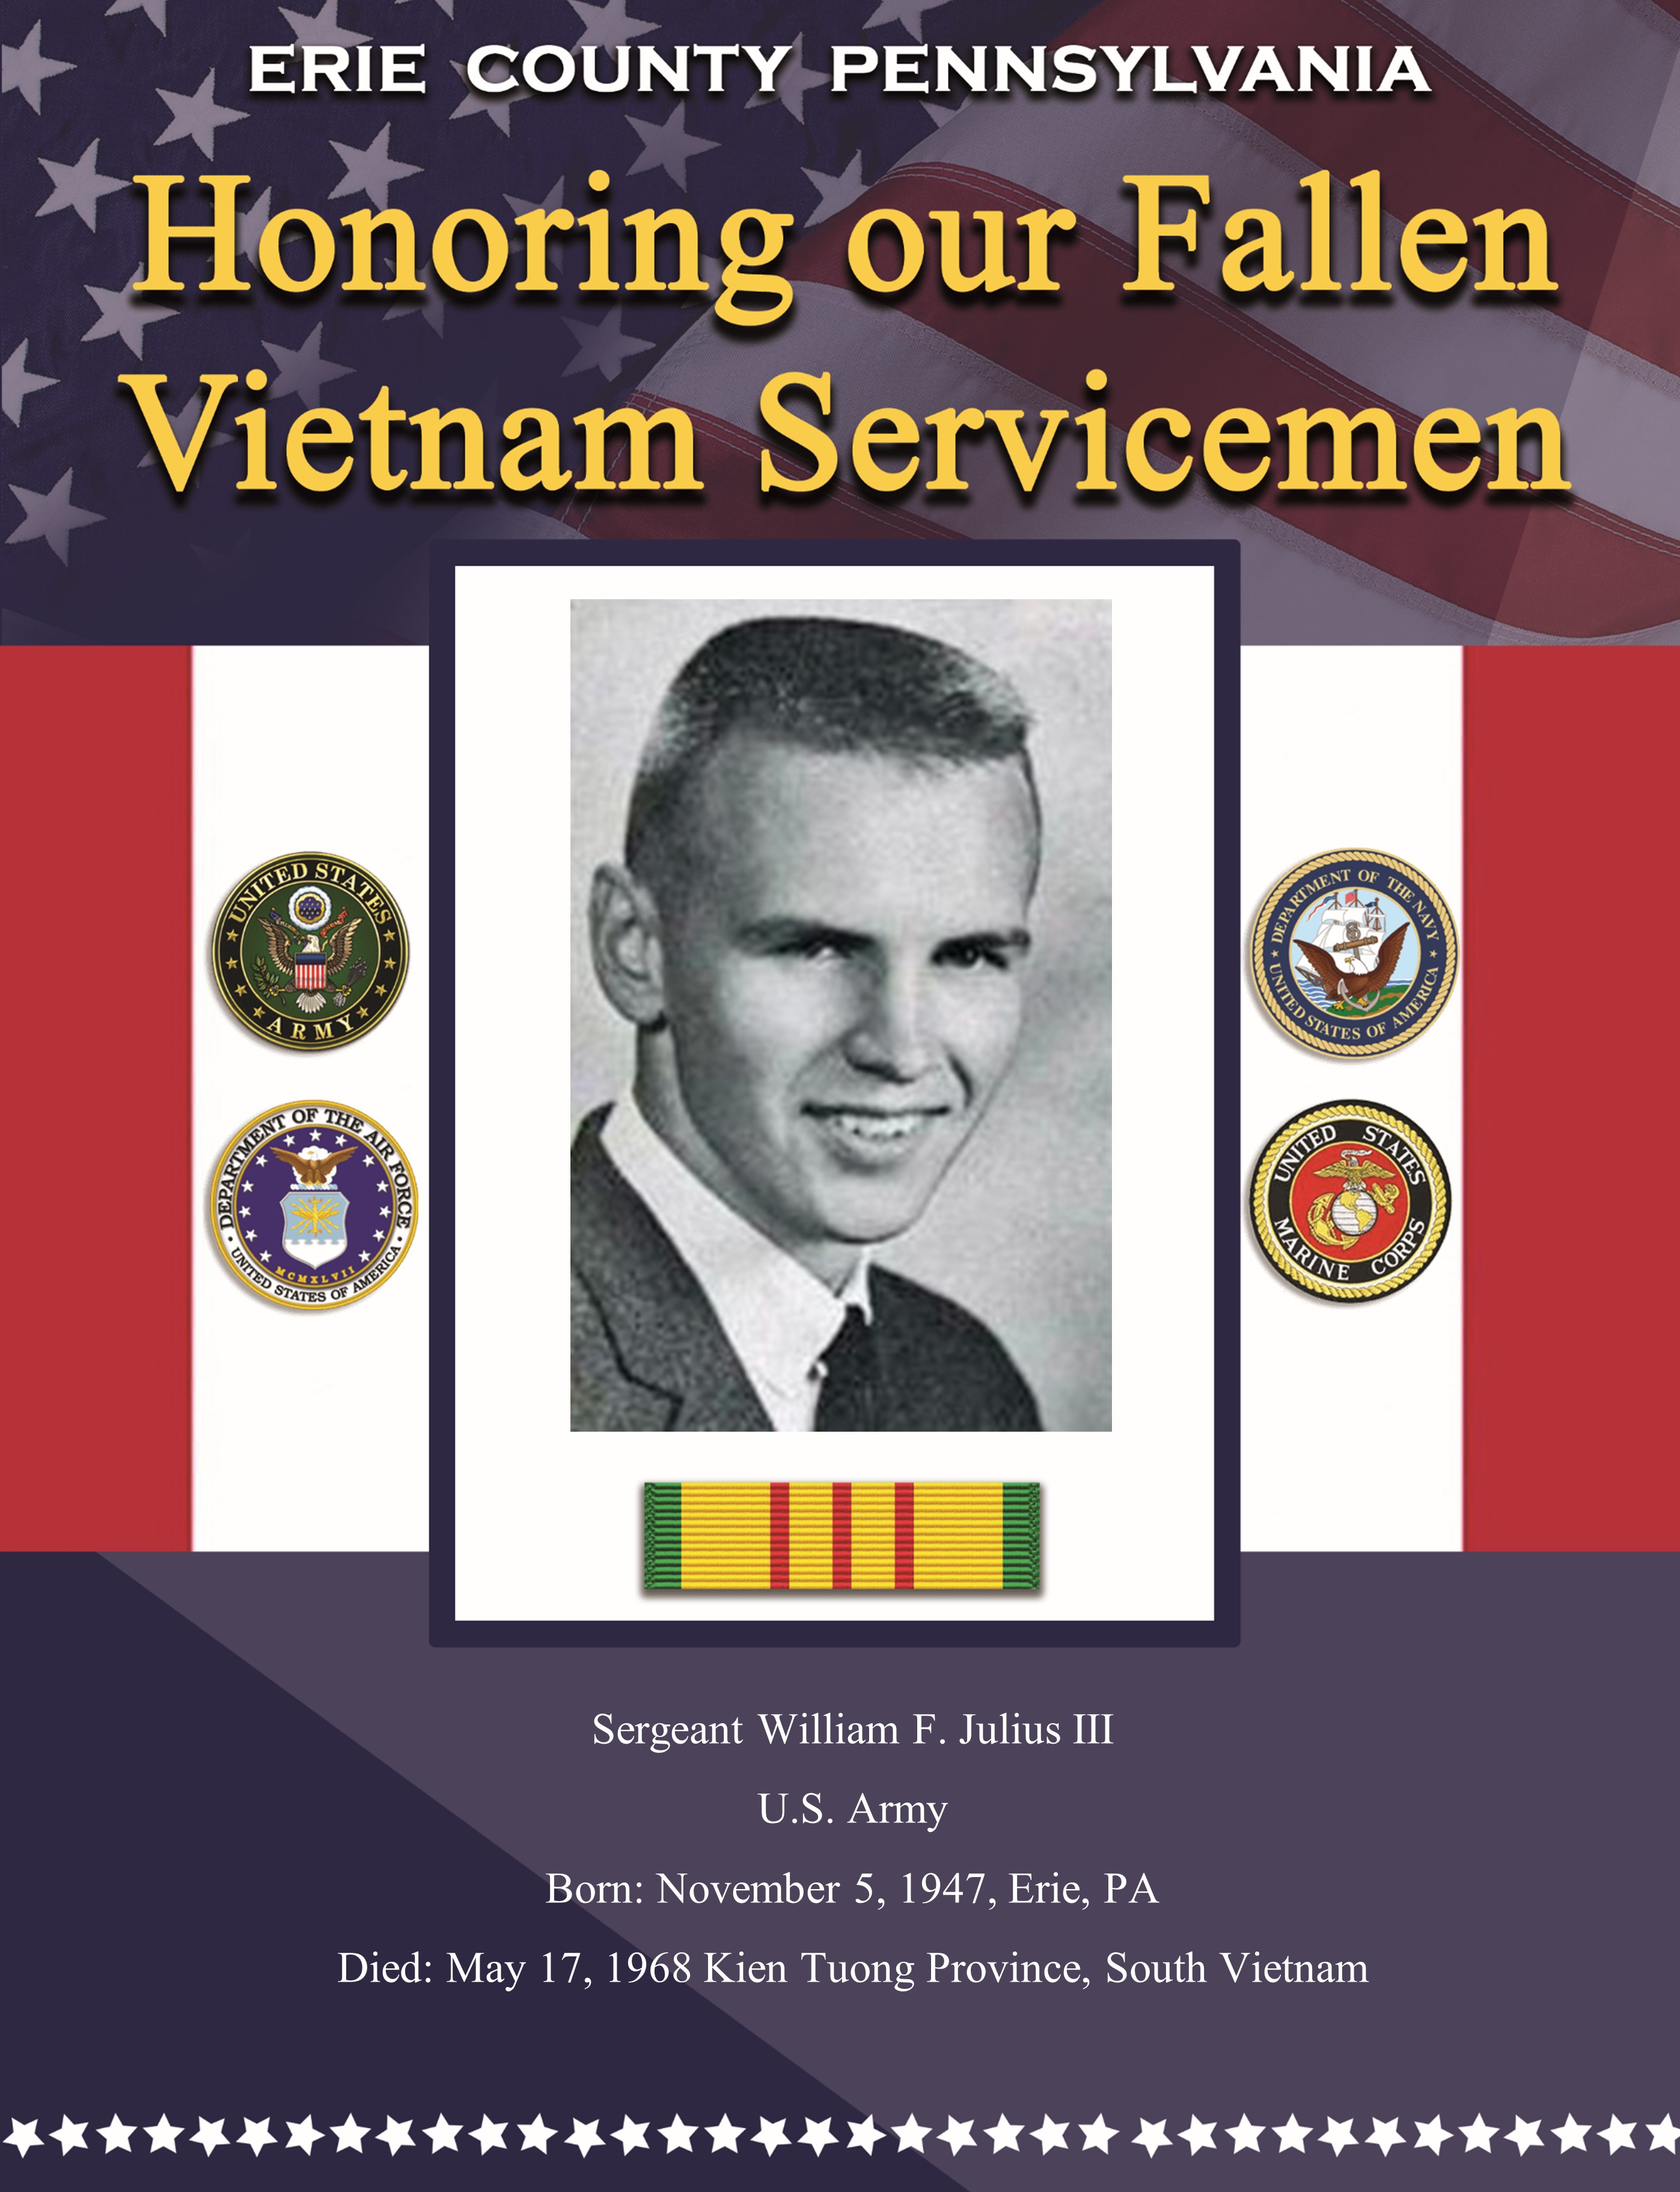 Fallen in Vietnam 31